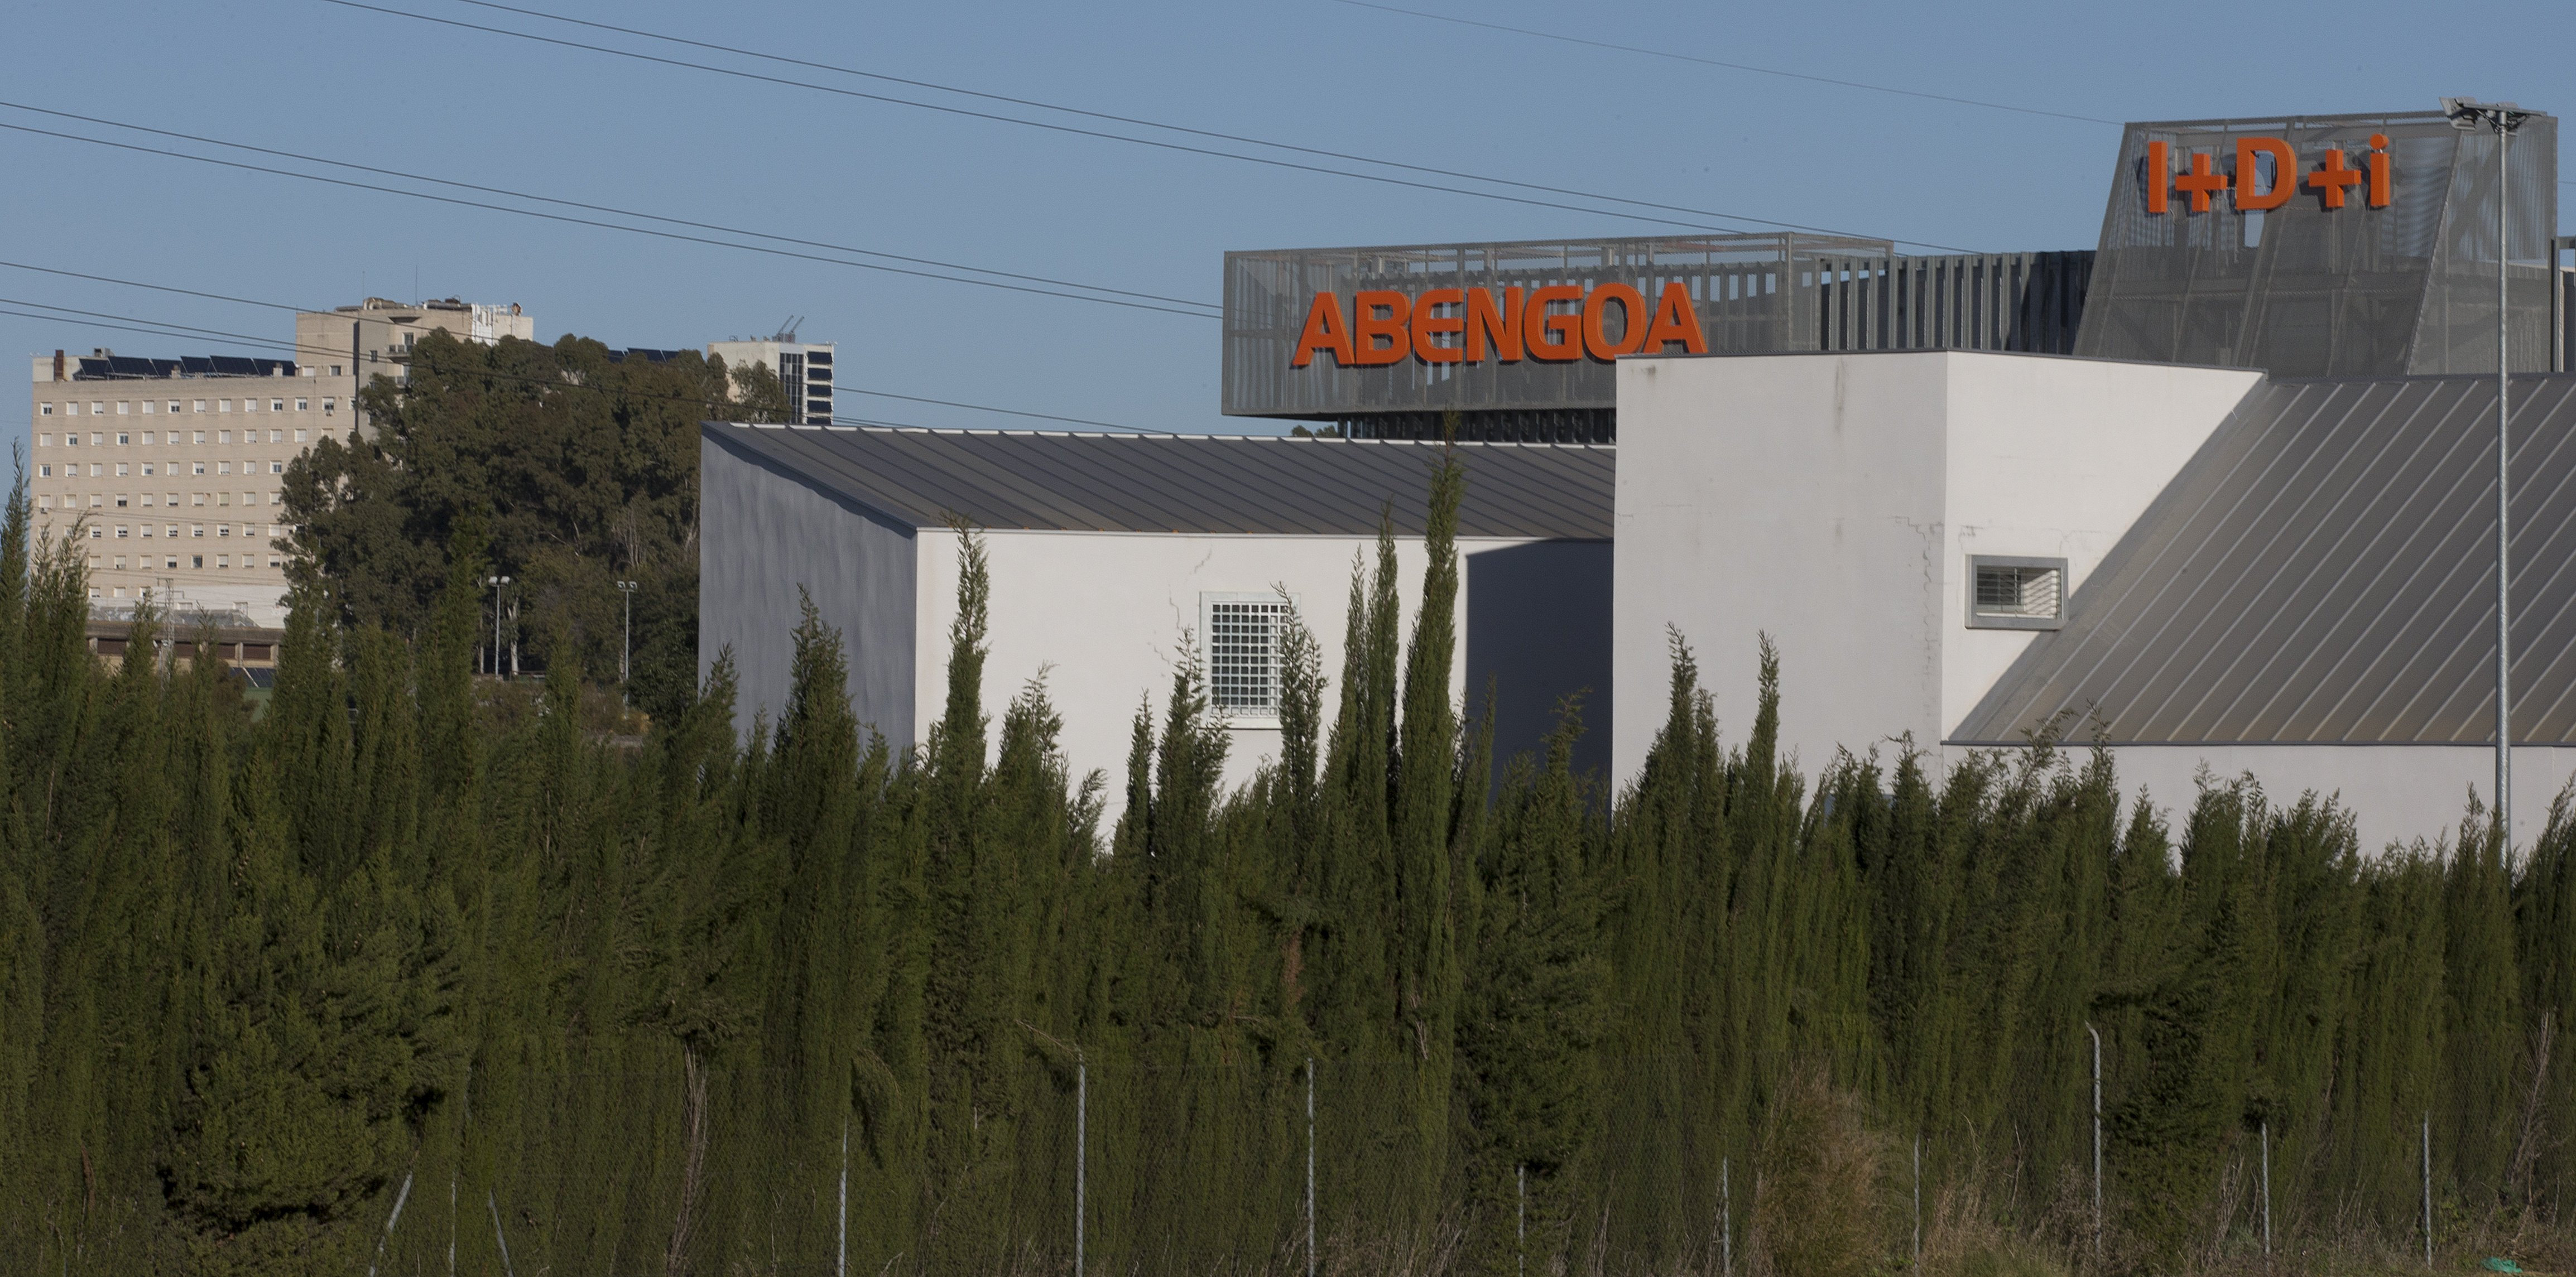 Abengoa anuncia que ha llegado a un acuerdo para la reestructuración deuda. En la imagen, exterior del complejo de Abengoa Water en Dos Hermanas (Sevilla).